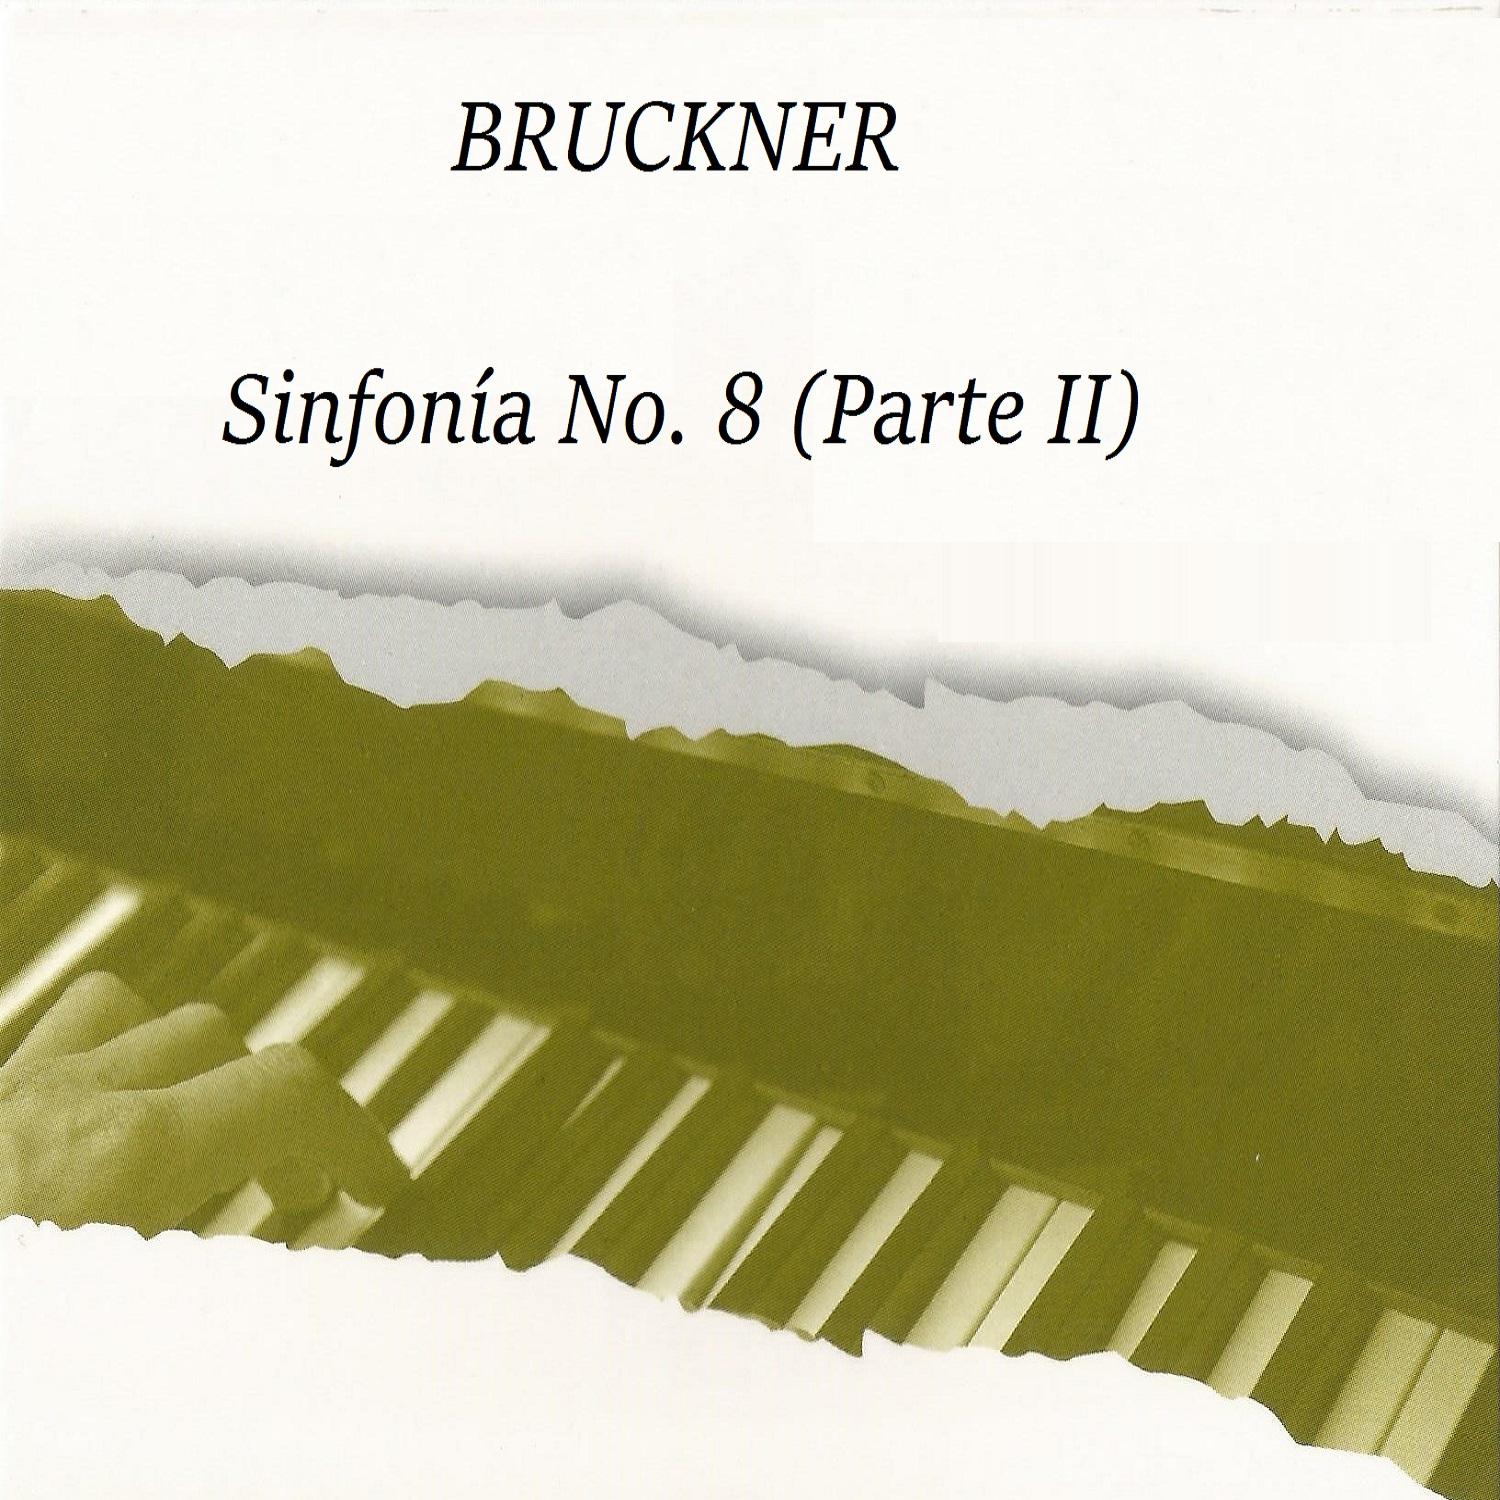 Bruckner, Sinfonía No. 8, Parte II